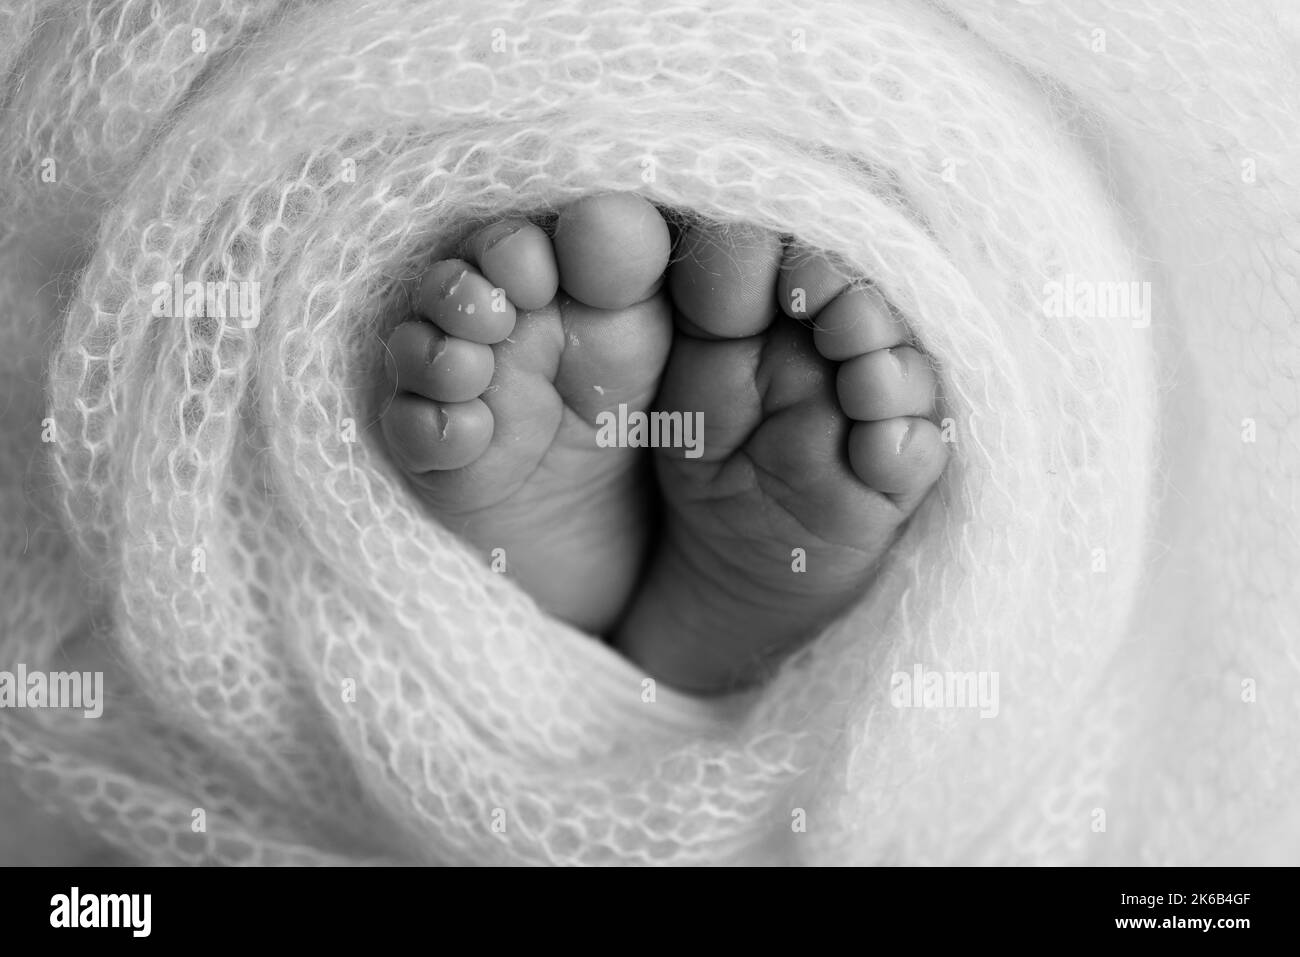 Pieds doux d'un nouveau-né dans une couverture en laine. Gros plan des orteils, des talons et des pieds d'un nouveau-né. Banque D'Images